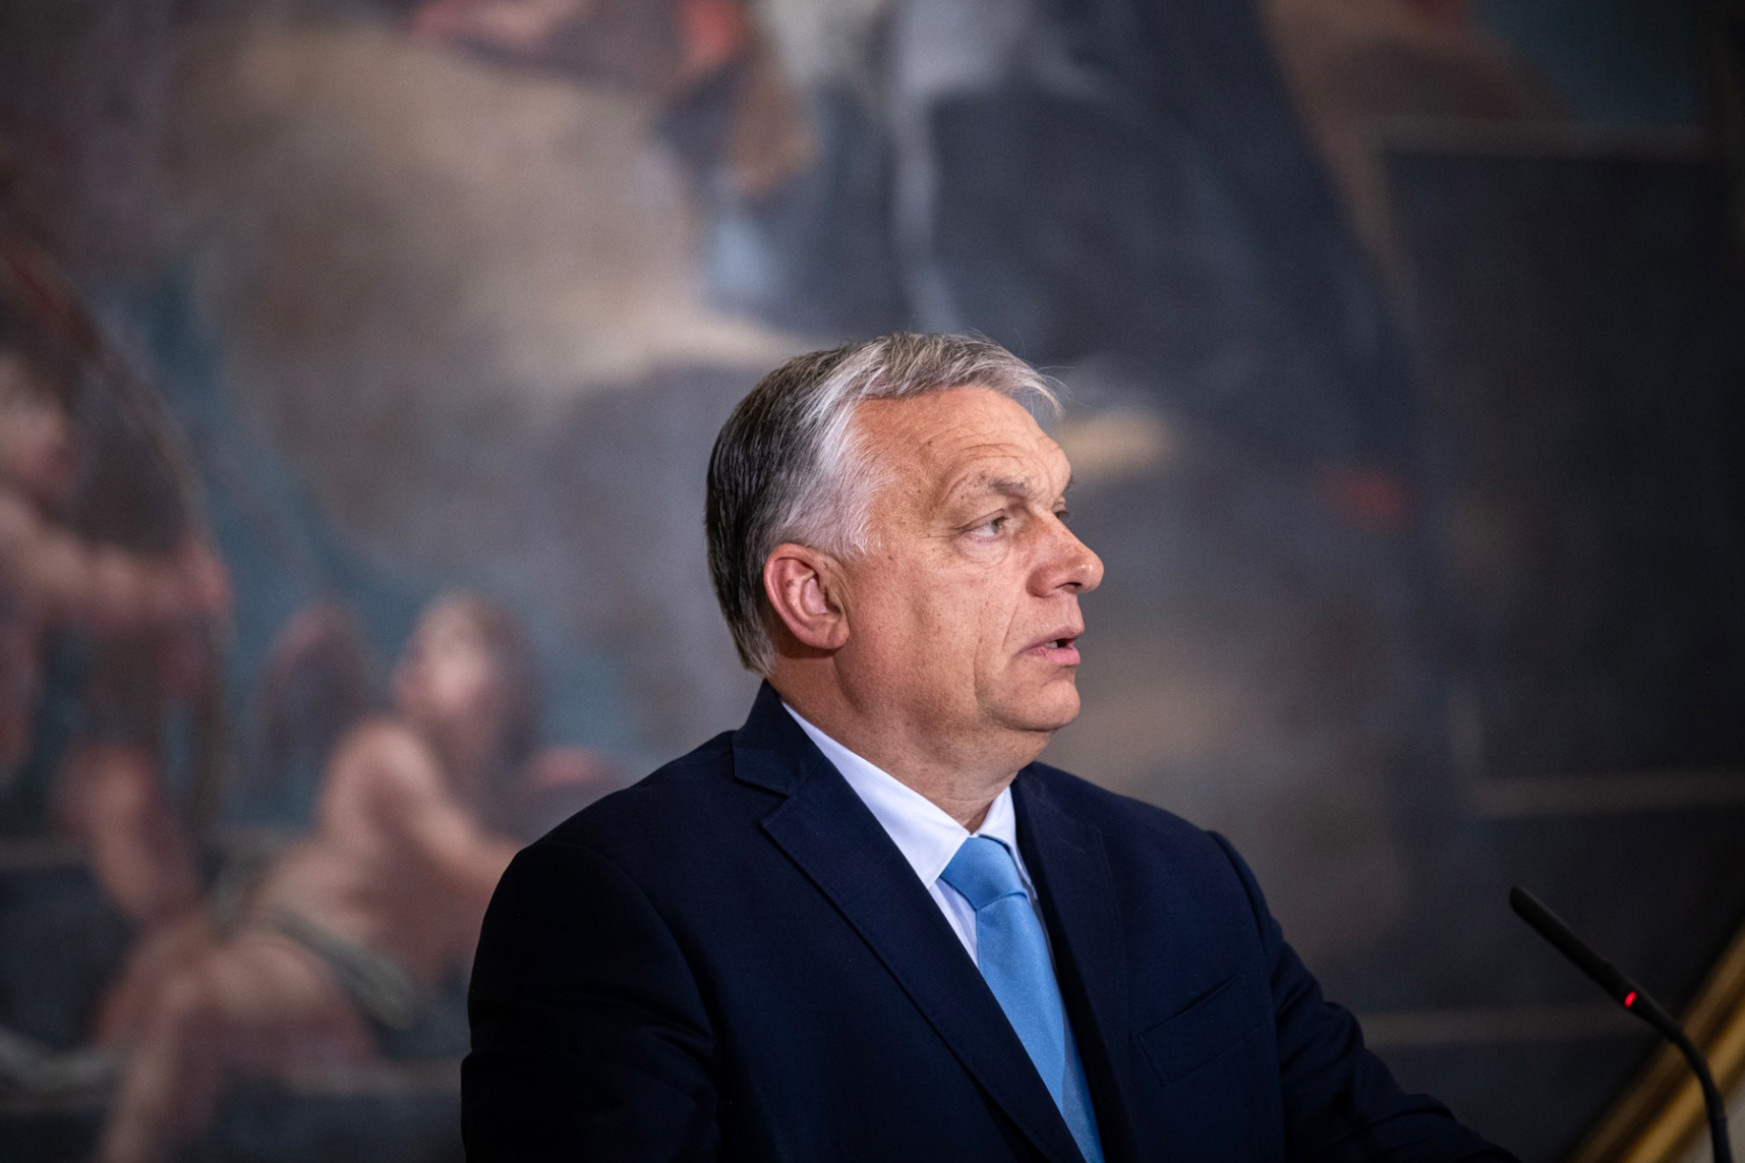 Sosem látott még a lájkbajnokság akkora bukást, mint amit most Orbán bemutatott